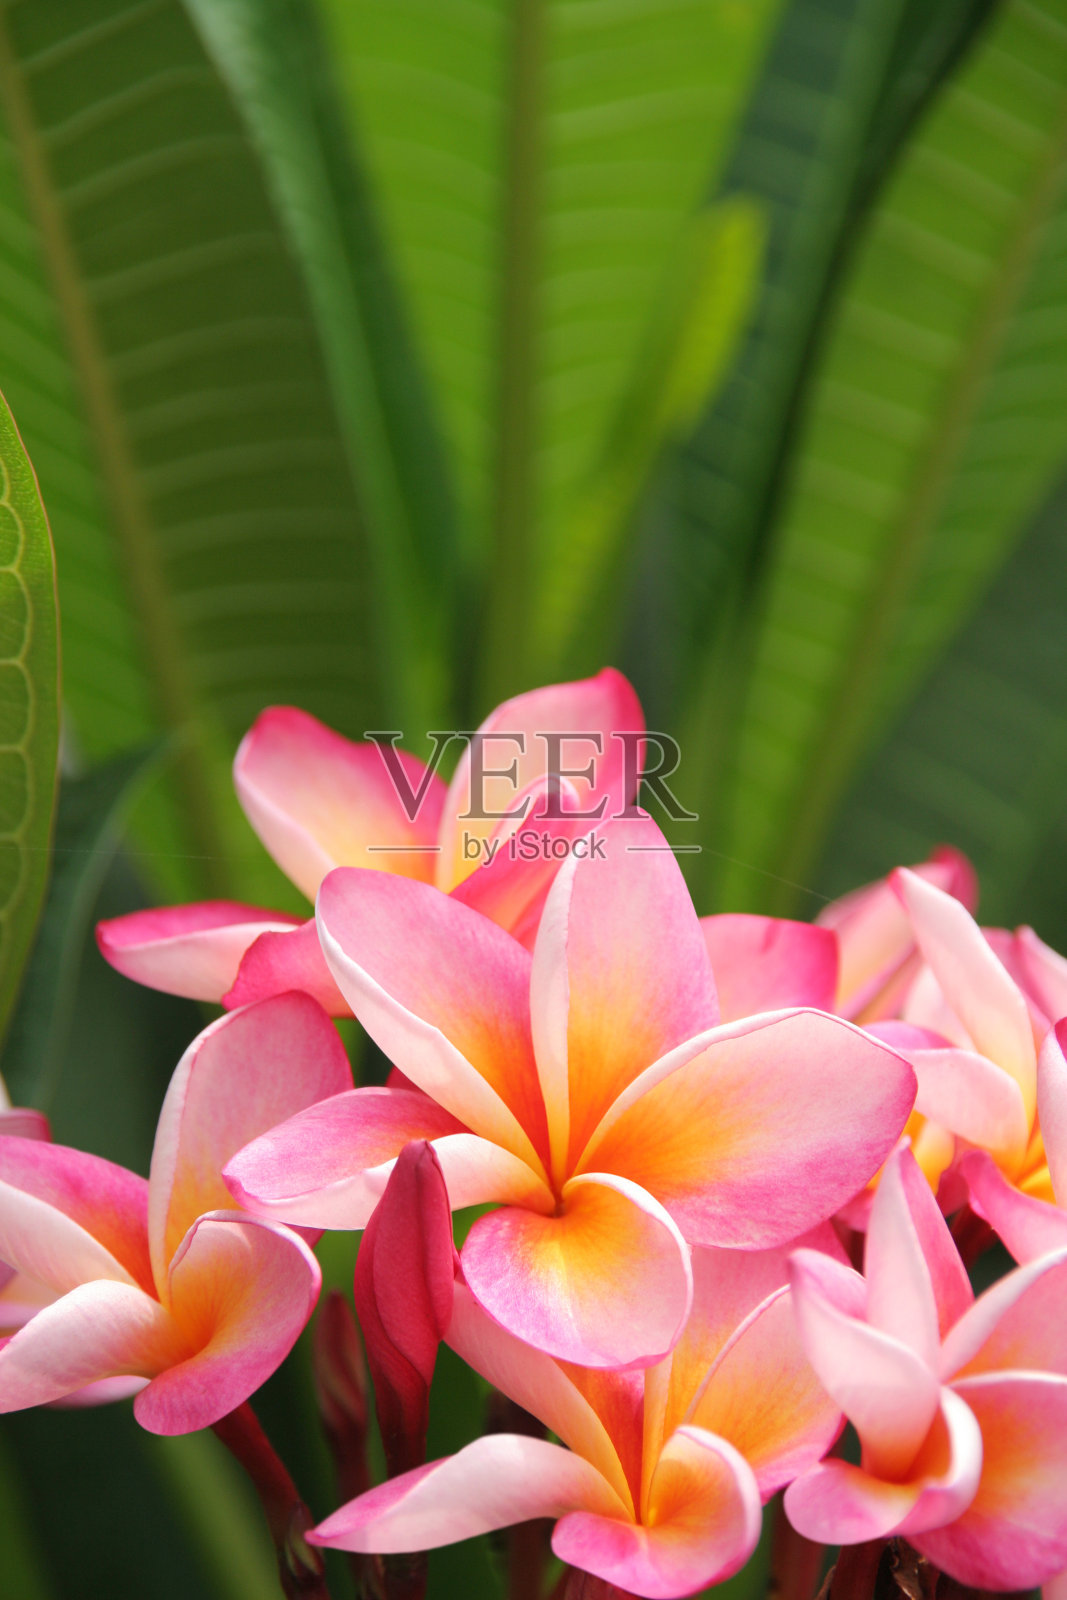 粉红色鸡蛋花植物和绿叶的特写照片摄影图片